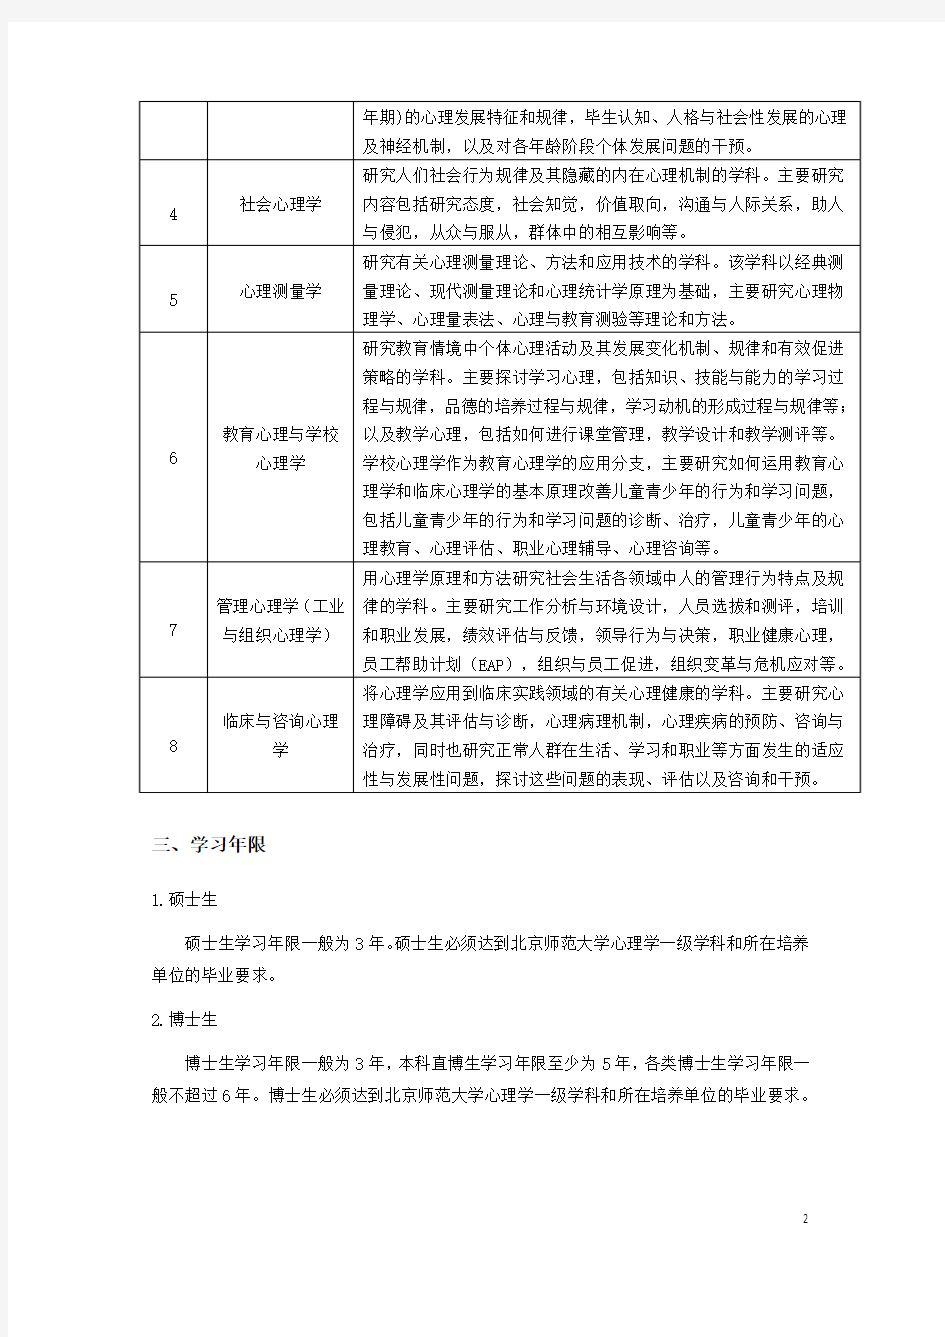 北京师范大学学术学位研究生培养方案(2015版)